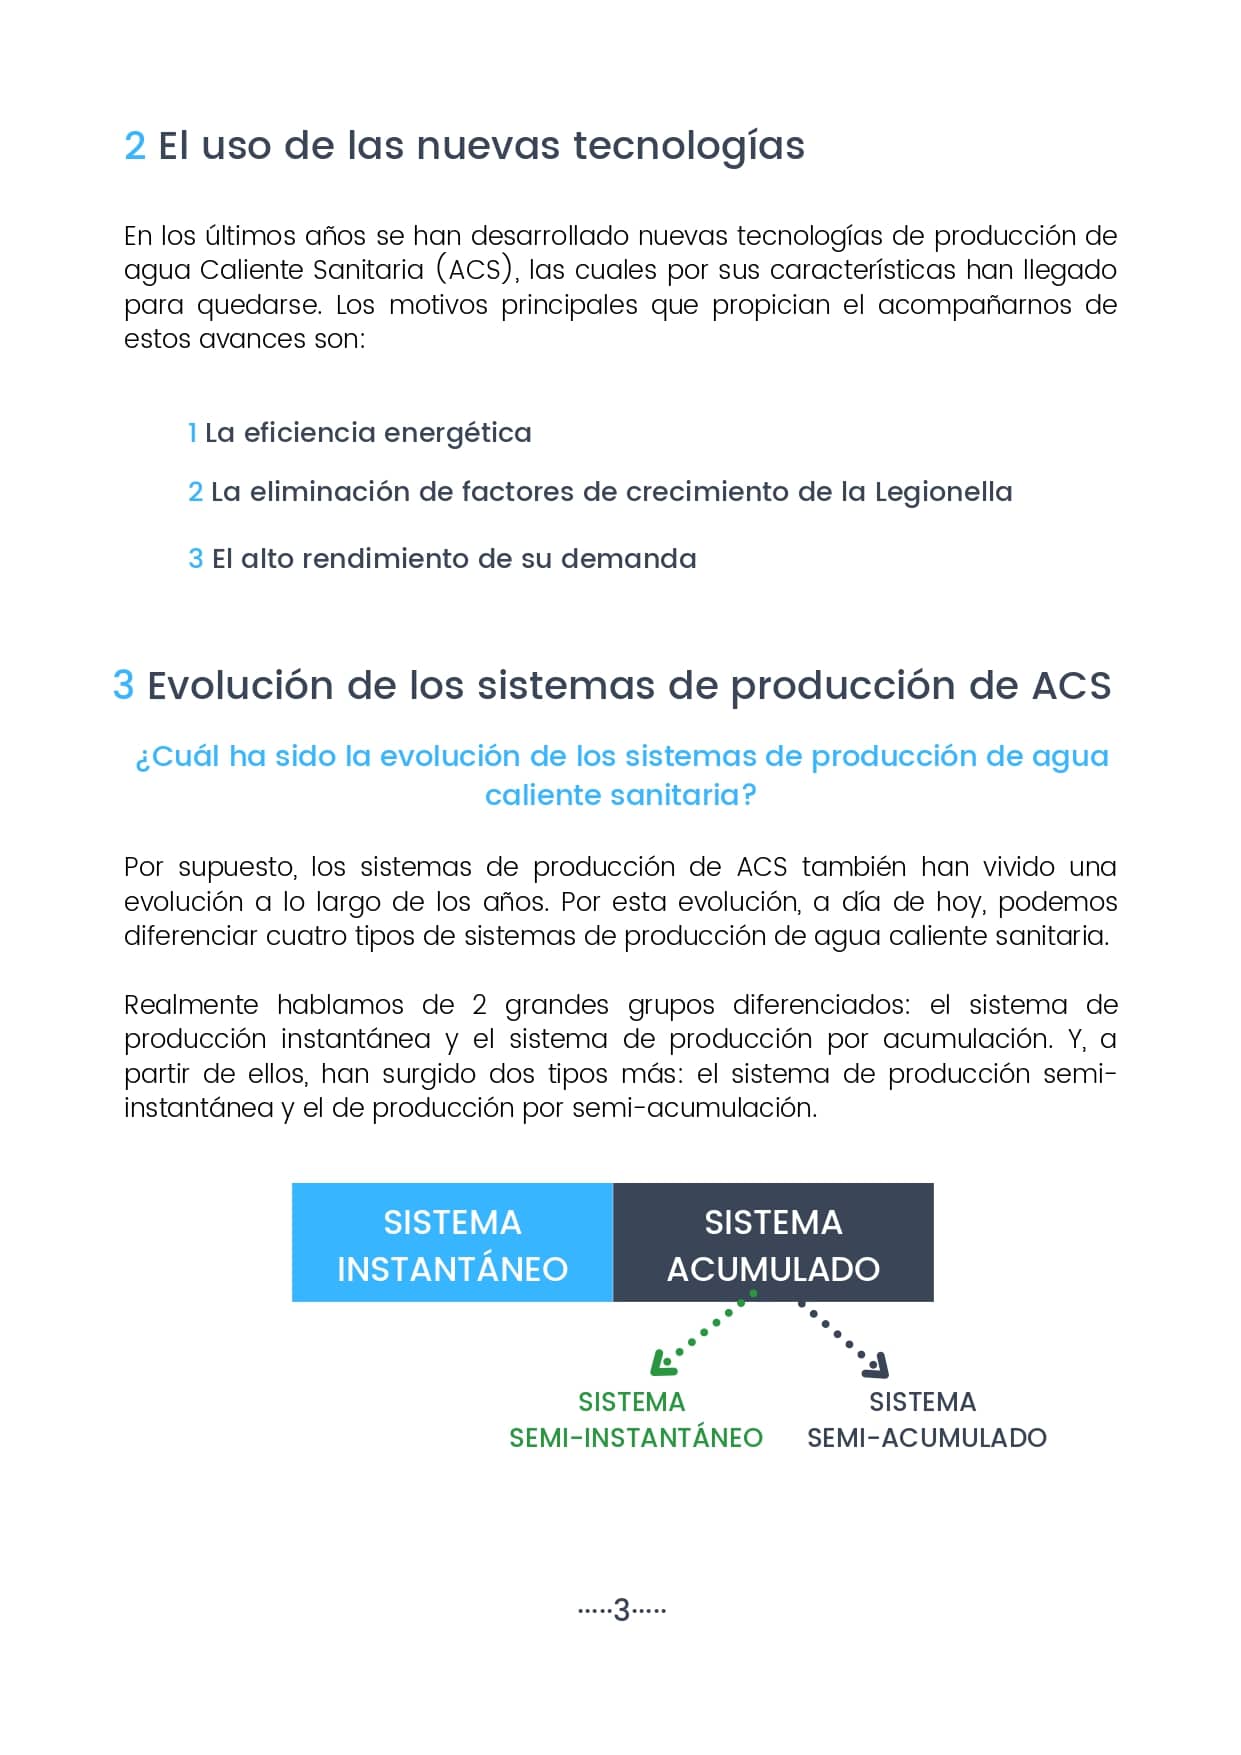 Guia comparativa Sistemas de producccion ACS 4 page 0001